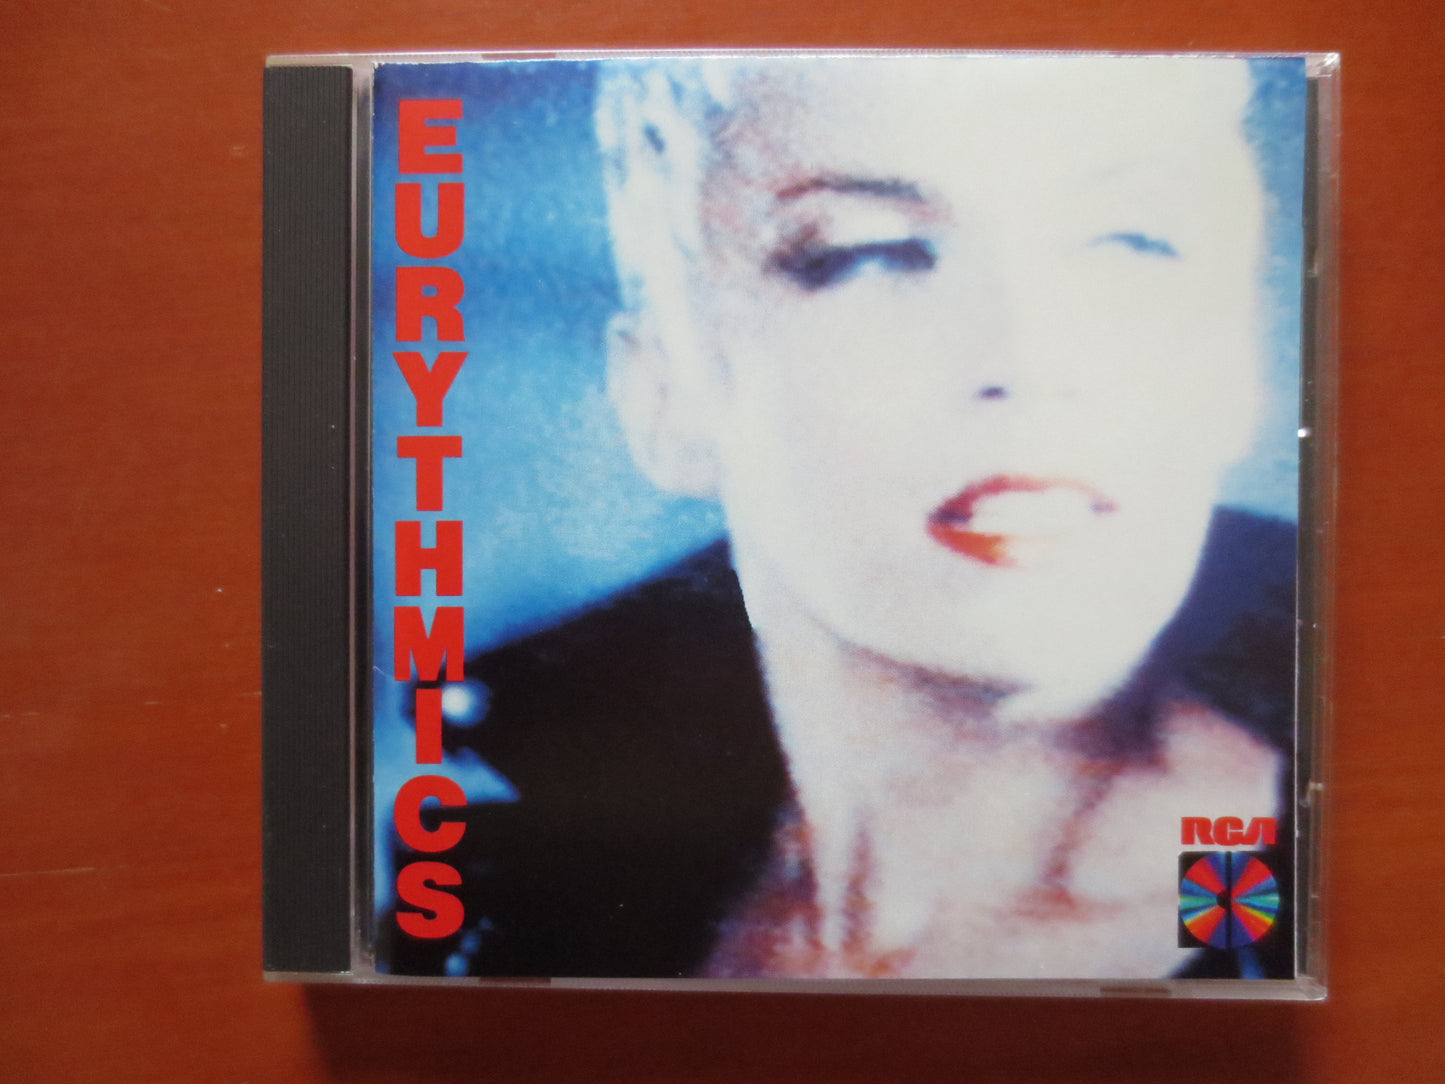 EURYTHMICS, Be YOURSELF Tonight, EURYTHMICS Cd, Rock Compact Disc, Eurythmics Lp, Rock Cd, Pop Music Cd, 1985 Compact Discs